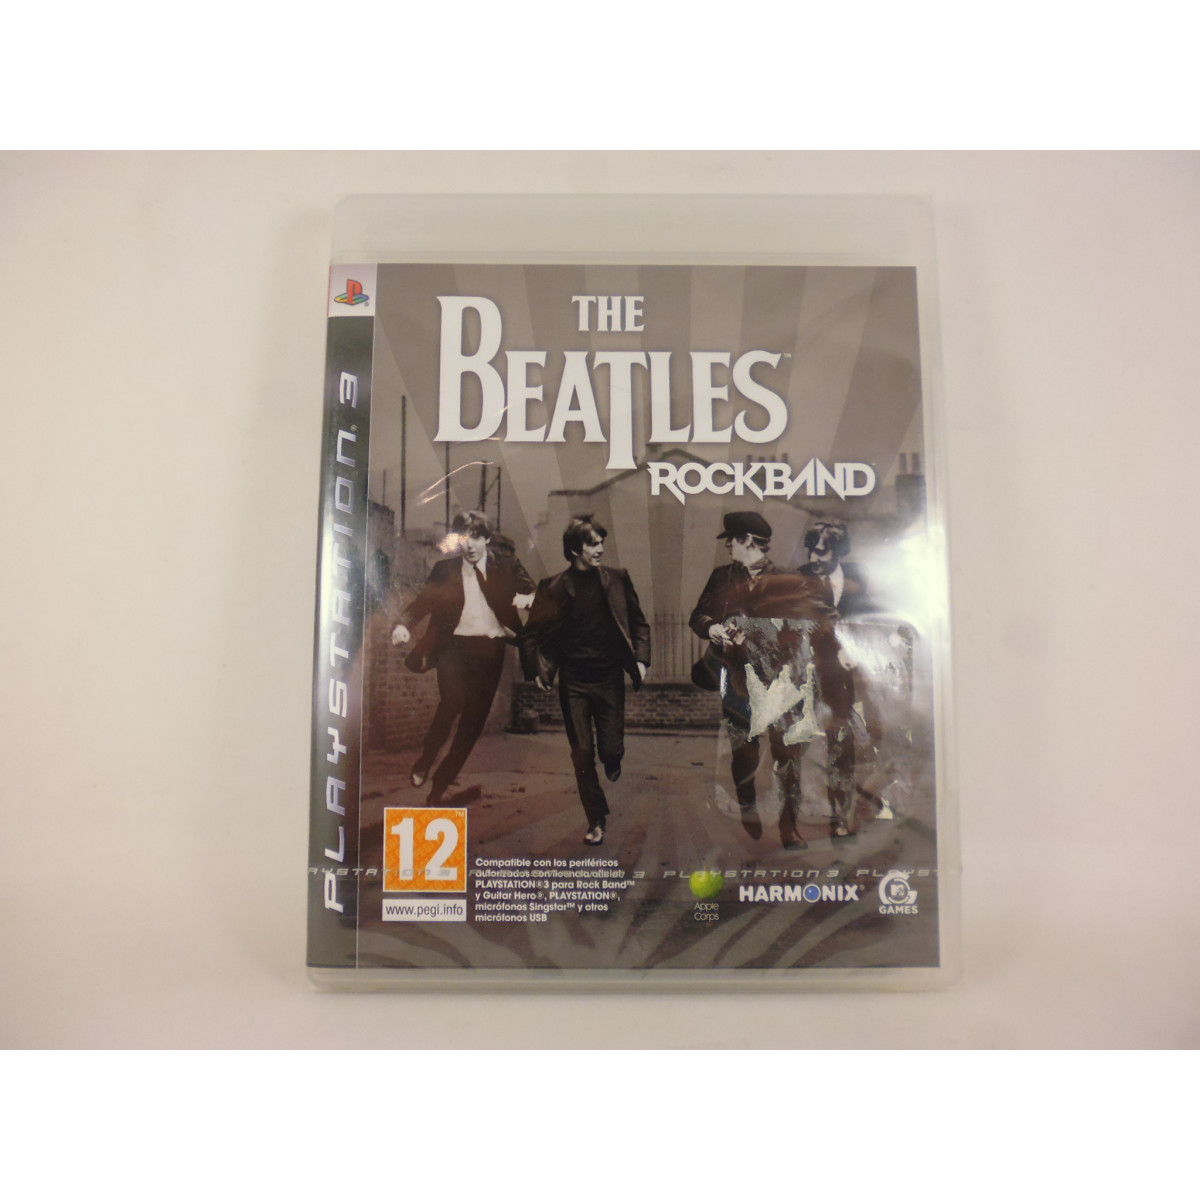 PS comprar Band The Beatles| Chollogames Videojuegos